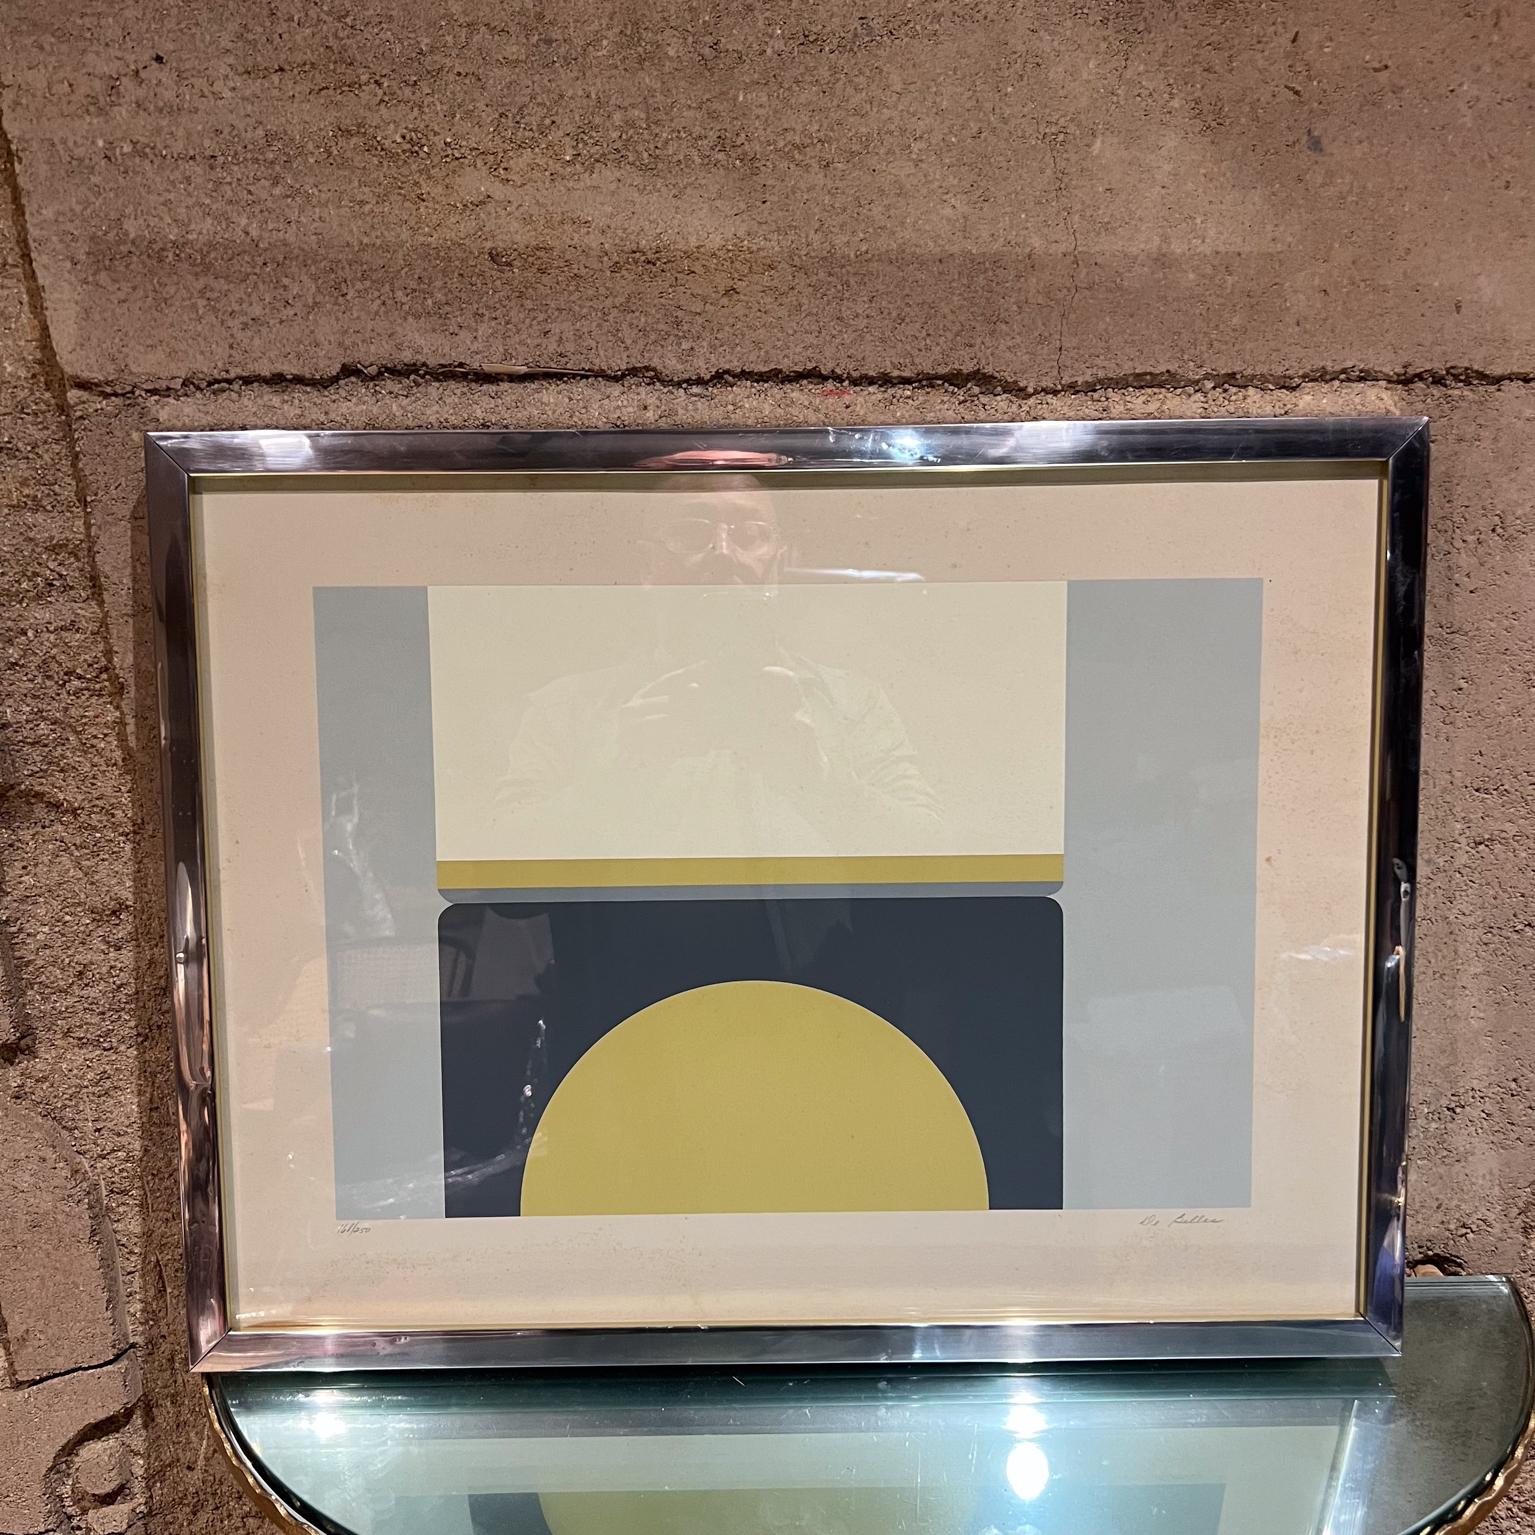 
1969 Fran DeBellas Lithographie Druck
Abstrakte optische Kunst
19,13 H x 25,13 B x 1,13 T Rahmen
Kunst 17.38 x 23.5 w
signierte und nummerierte Kunst
Original Vintage Zustand
Siehe die aufgeführten Bilder.